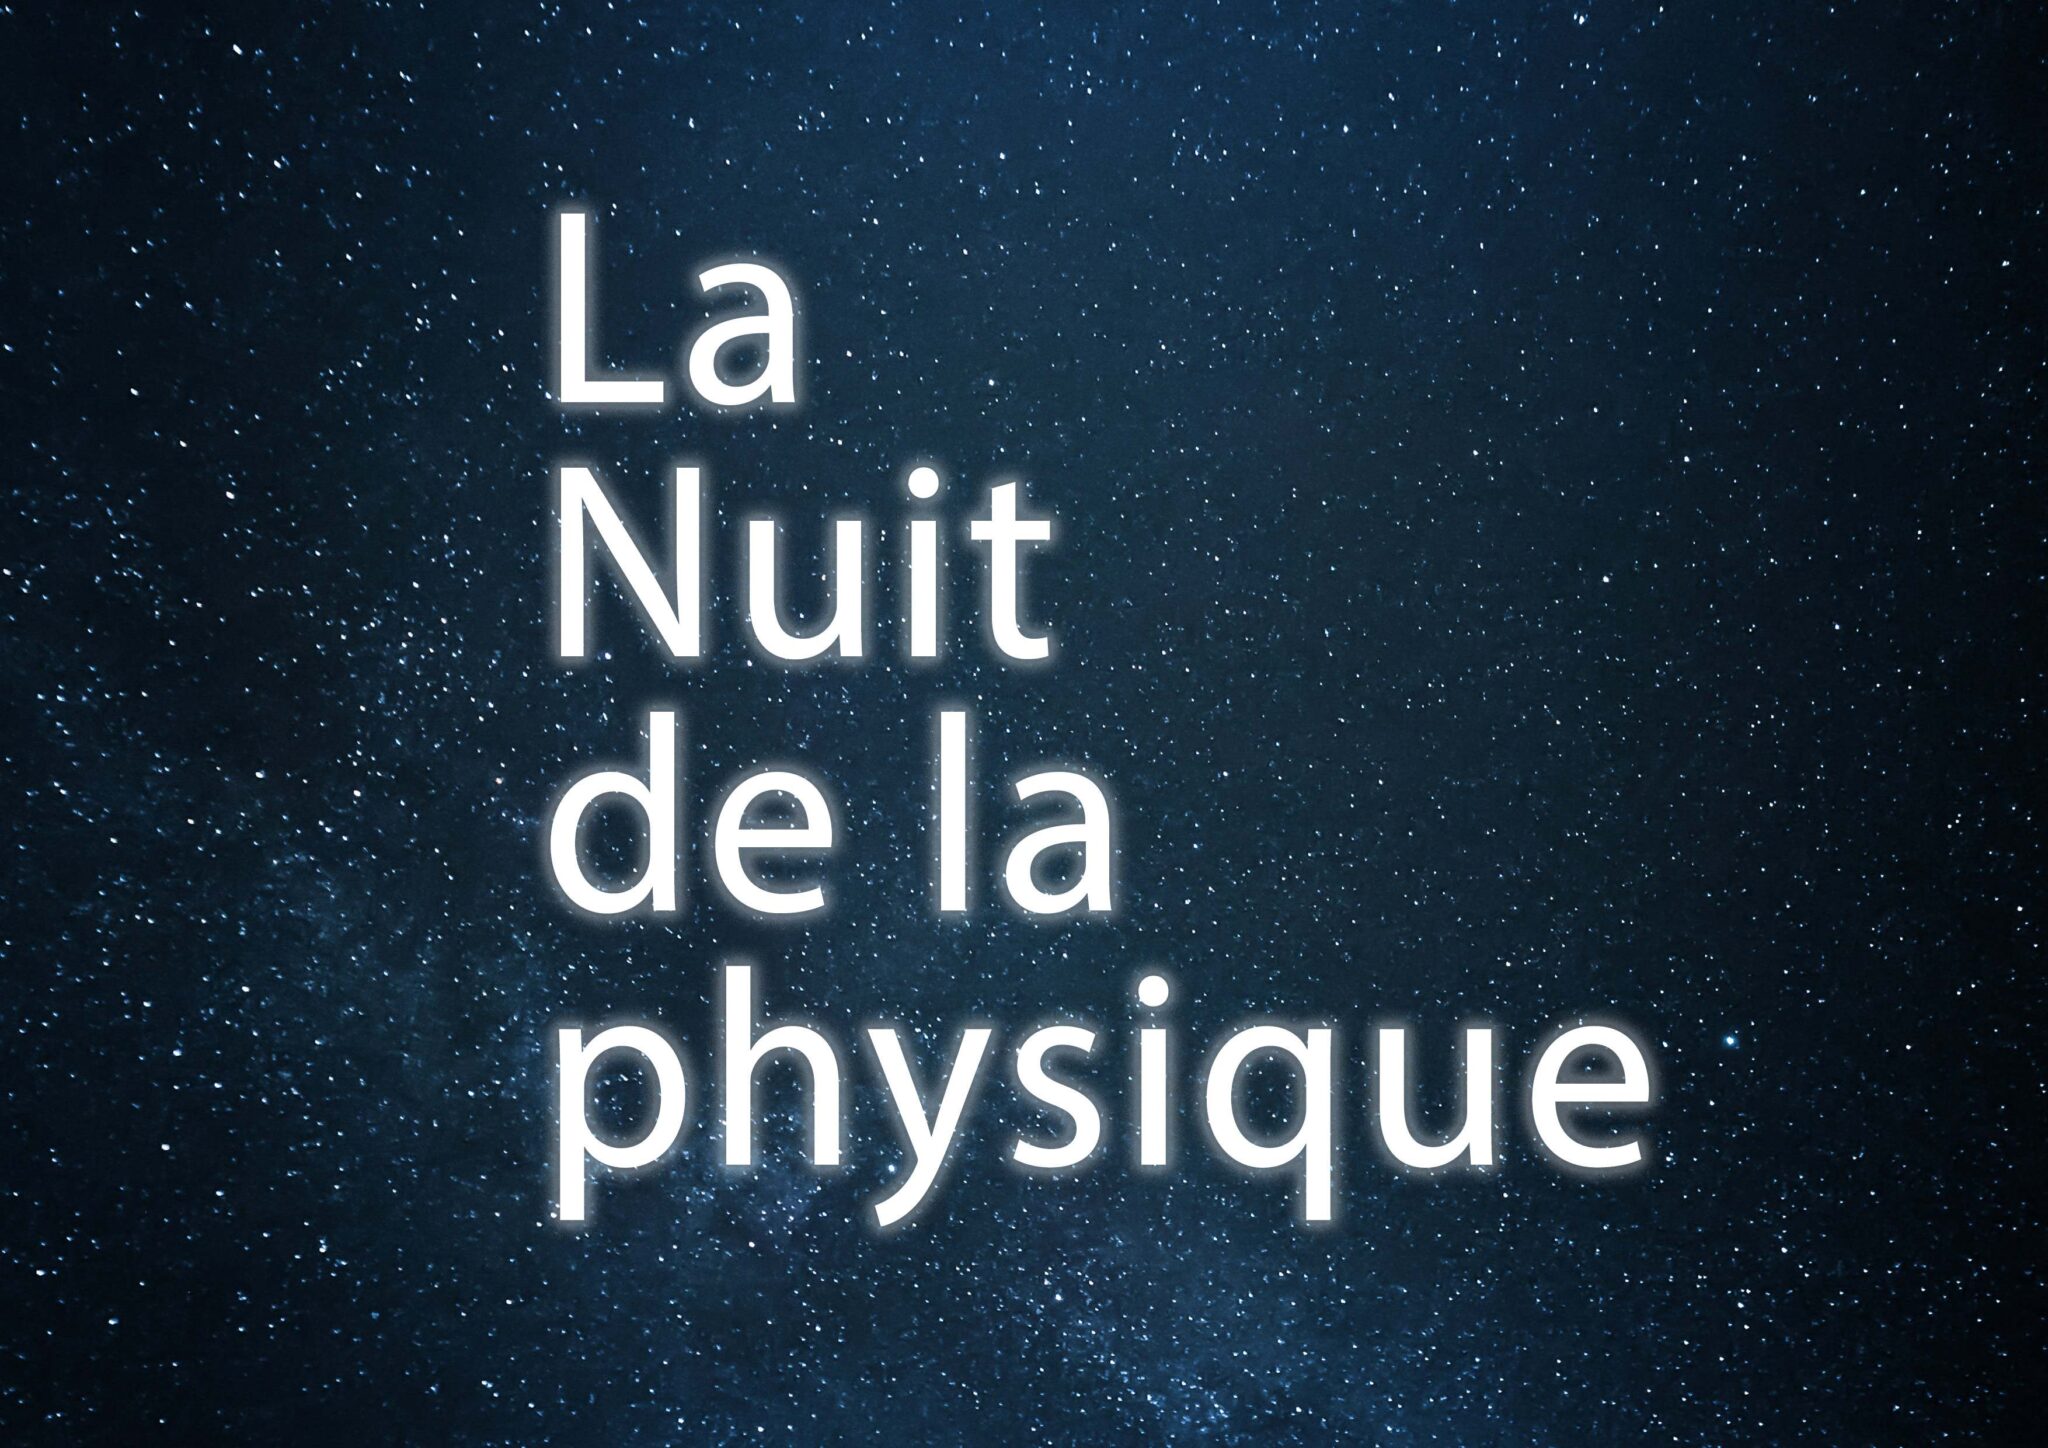 Nuit de la physique écrit sur un ciel étoilé